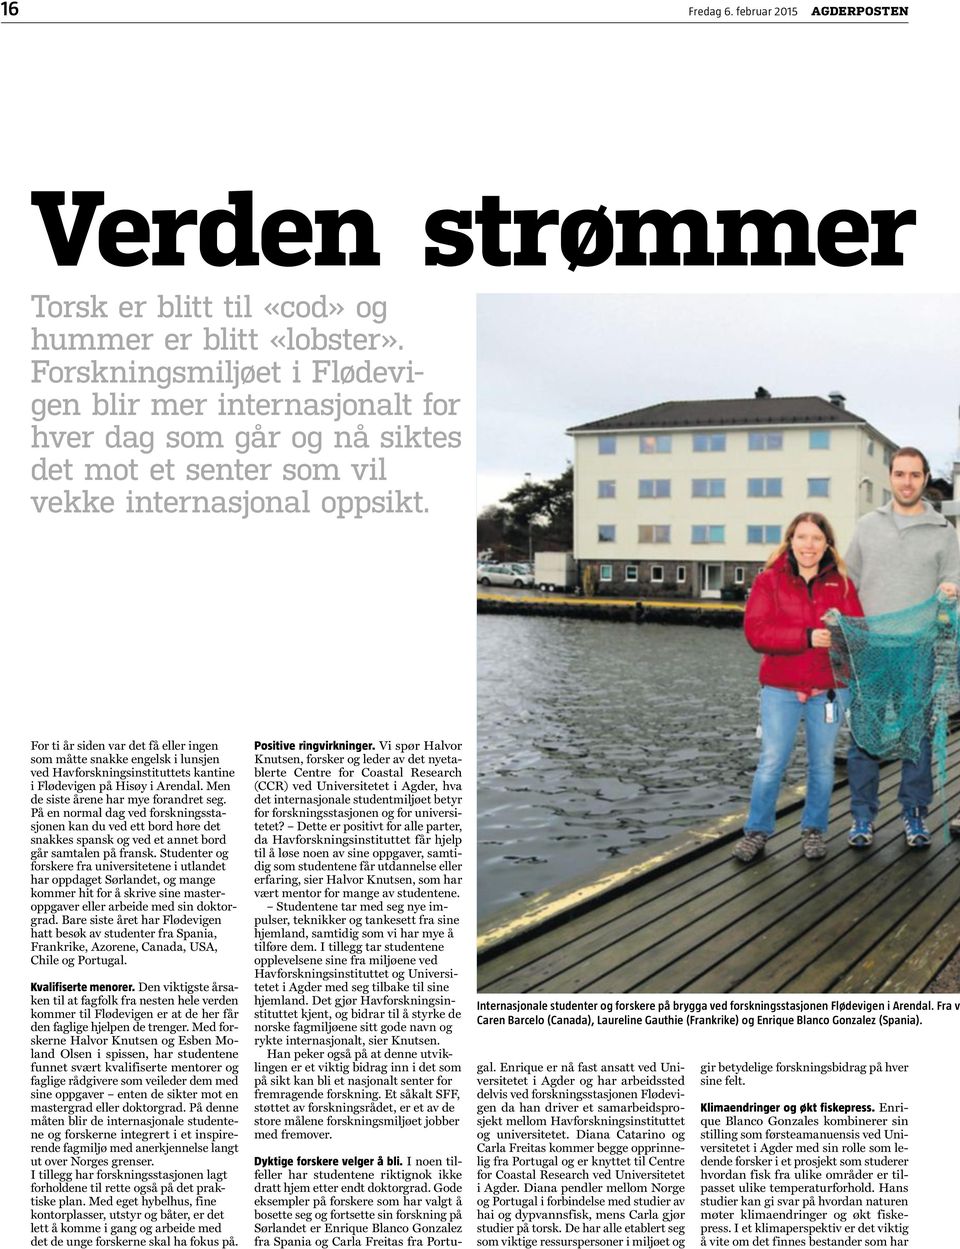 For ti år siden var det få eller ingen som måtte snakke engelsk i lunsjen ved Havforskningsinstituttets kantine i Flødevigen på Hisøy i Arendal. Men de siste årene har mye forandret seg.